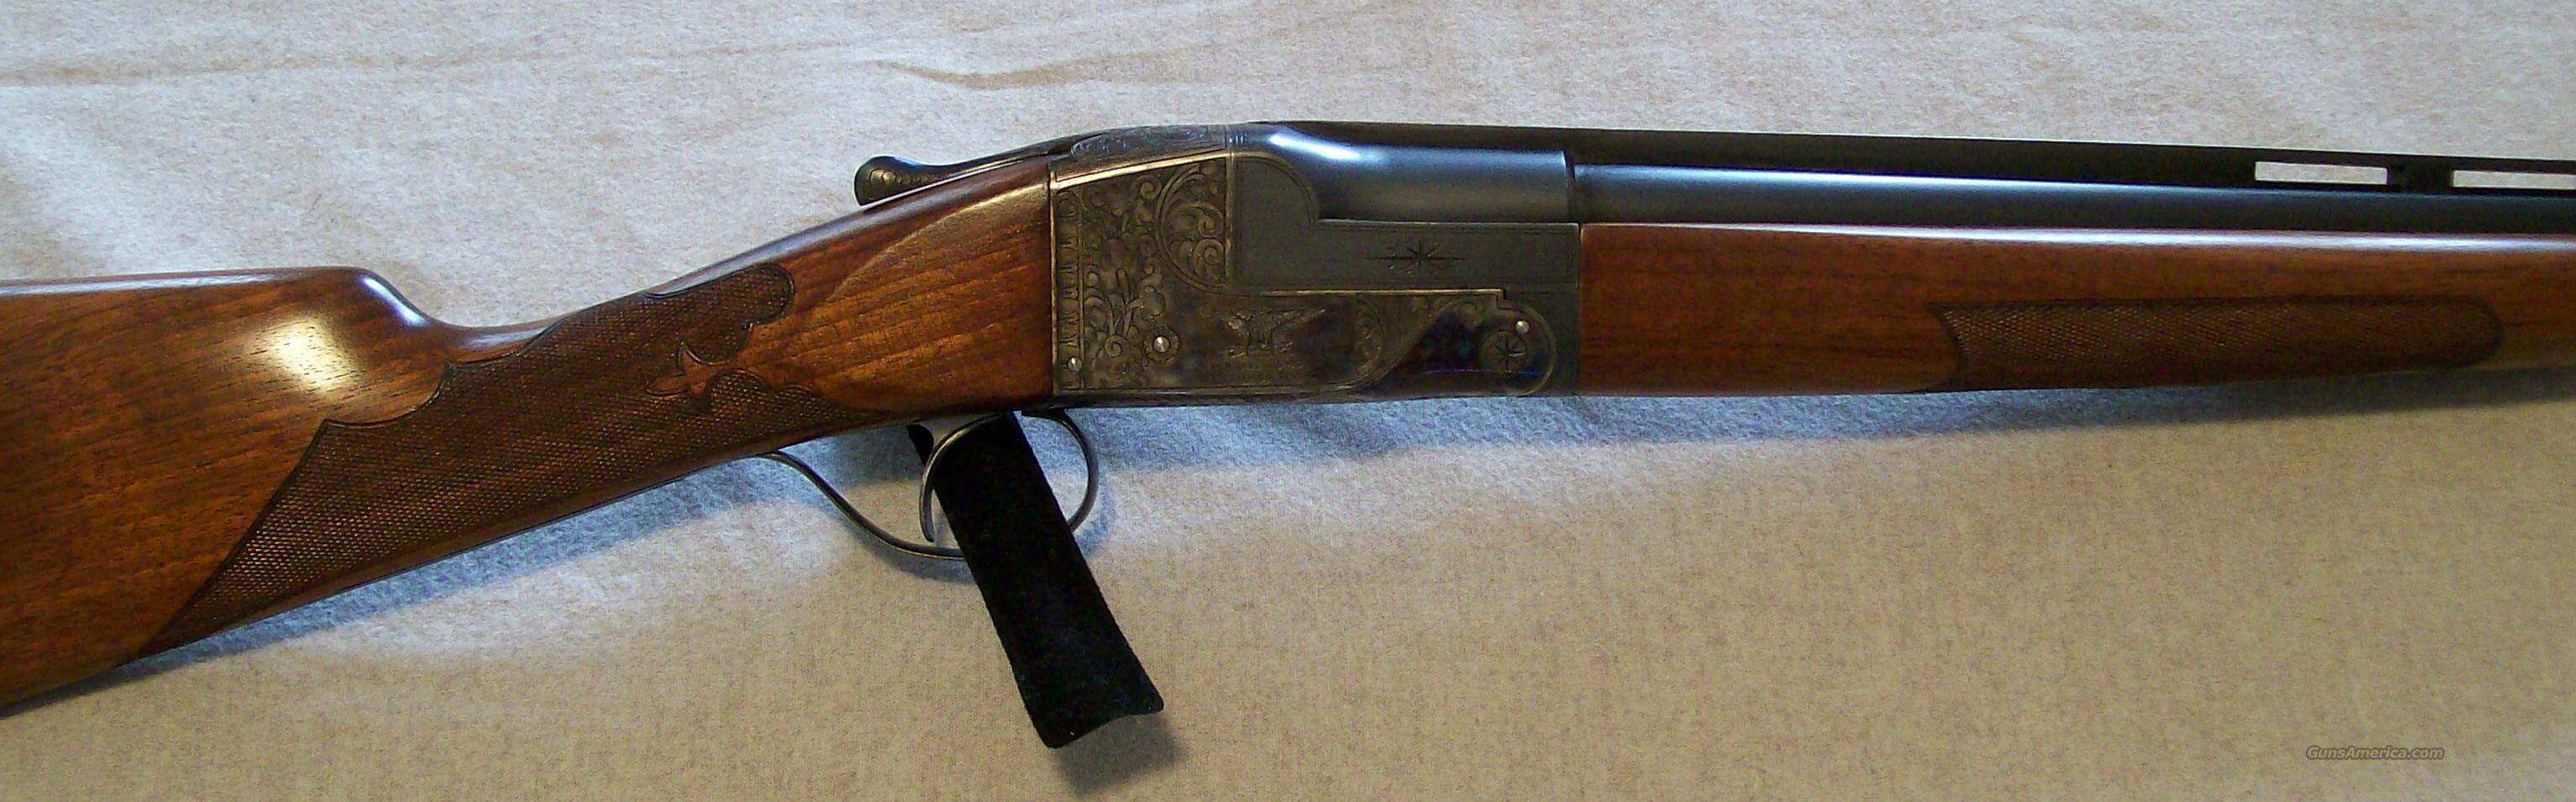 ithaca gun serial number lookup